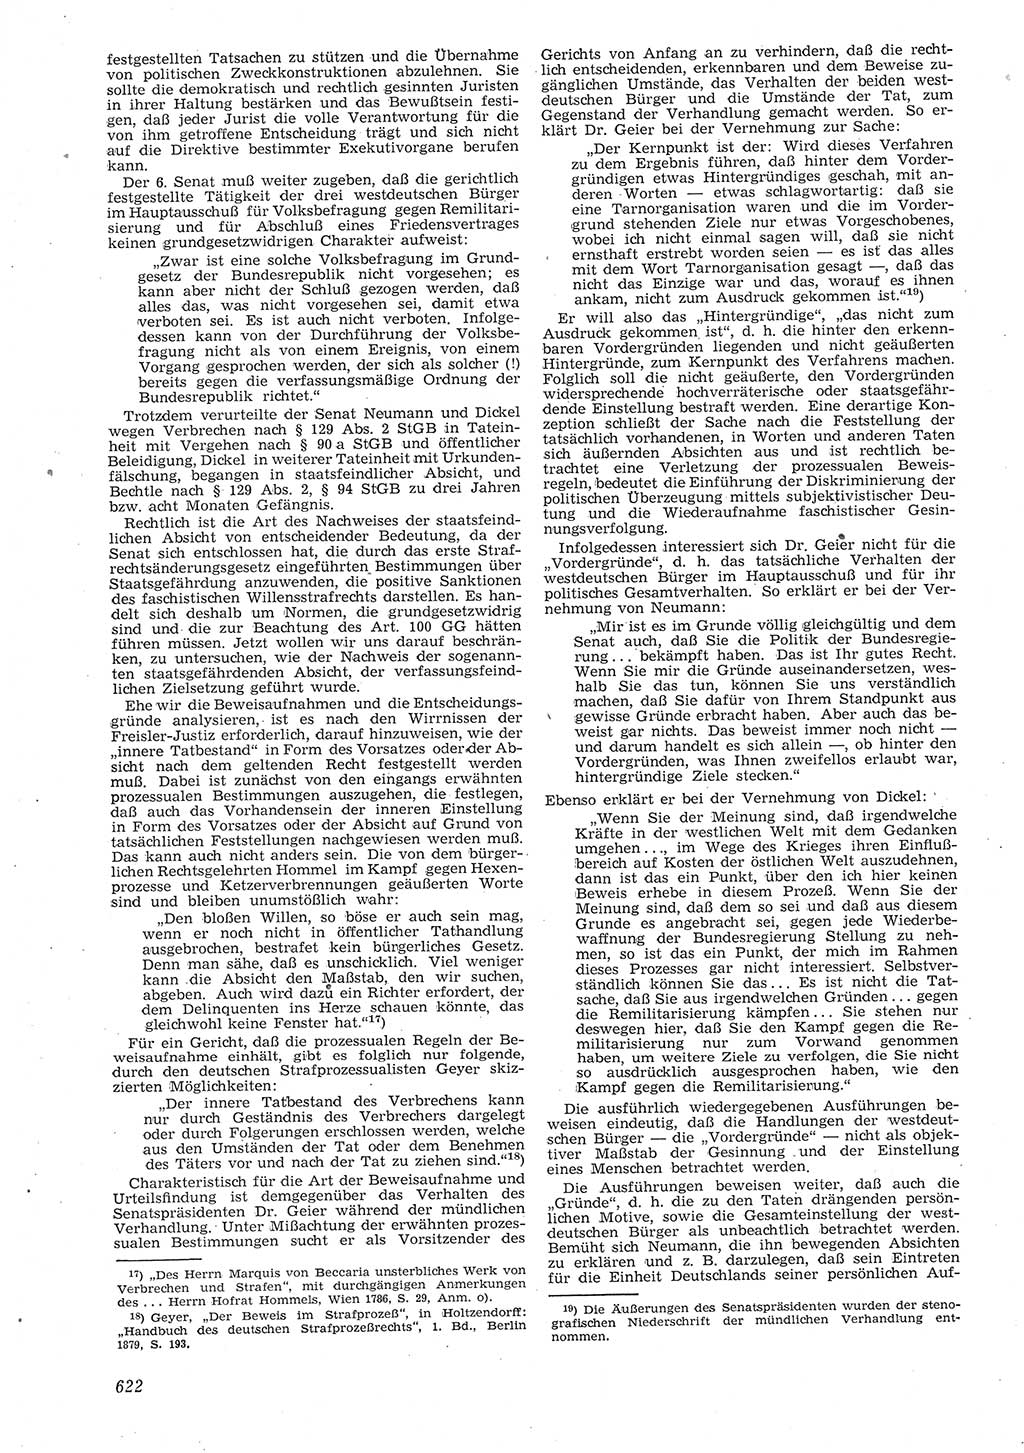 Neue Justiz (NJ), Zeitschrift für Recht und Rechtswissenschaft [Deutsche Demokratische Republik (DDR)], 8. Jahrgang 1954, Seite 622 (NJ DDR 1954, S. 622)